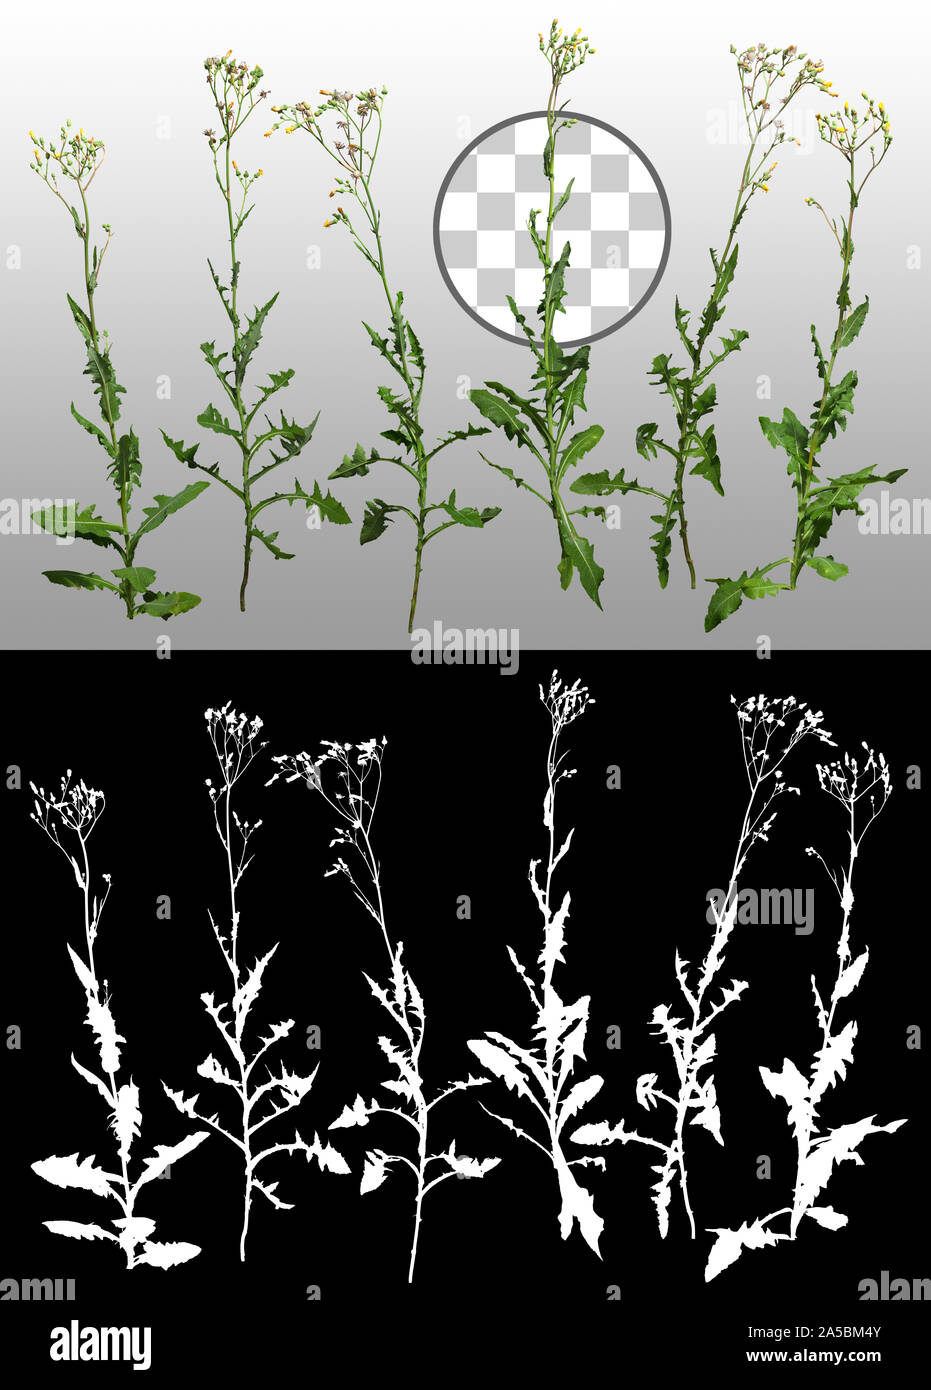 Wilder Salat. Wildpflanze isoliert auf transparentem Hintergrund über einen Alphakanal. Hochwertige Beschneidmaske für professionelle Komposition. Stockfoto